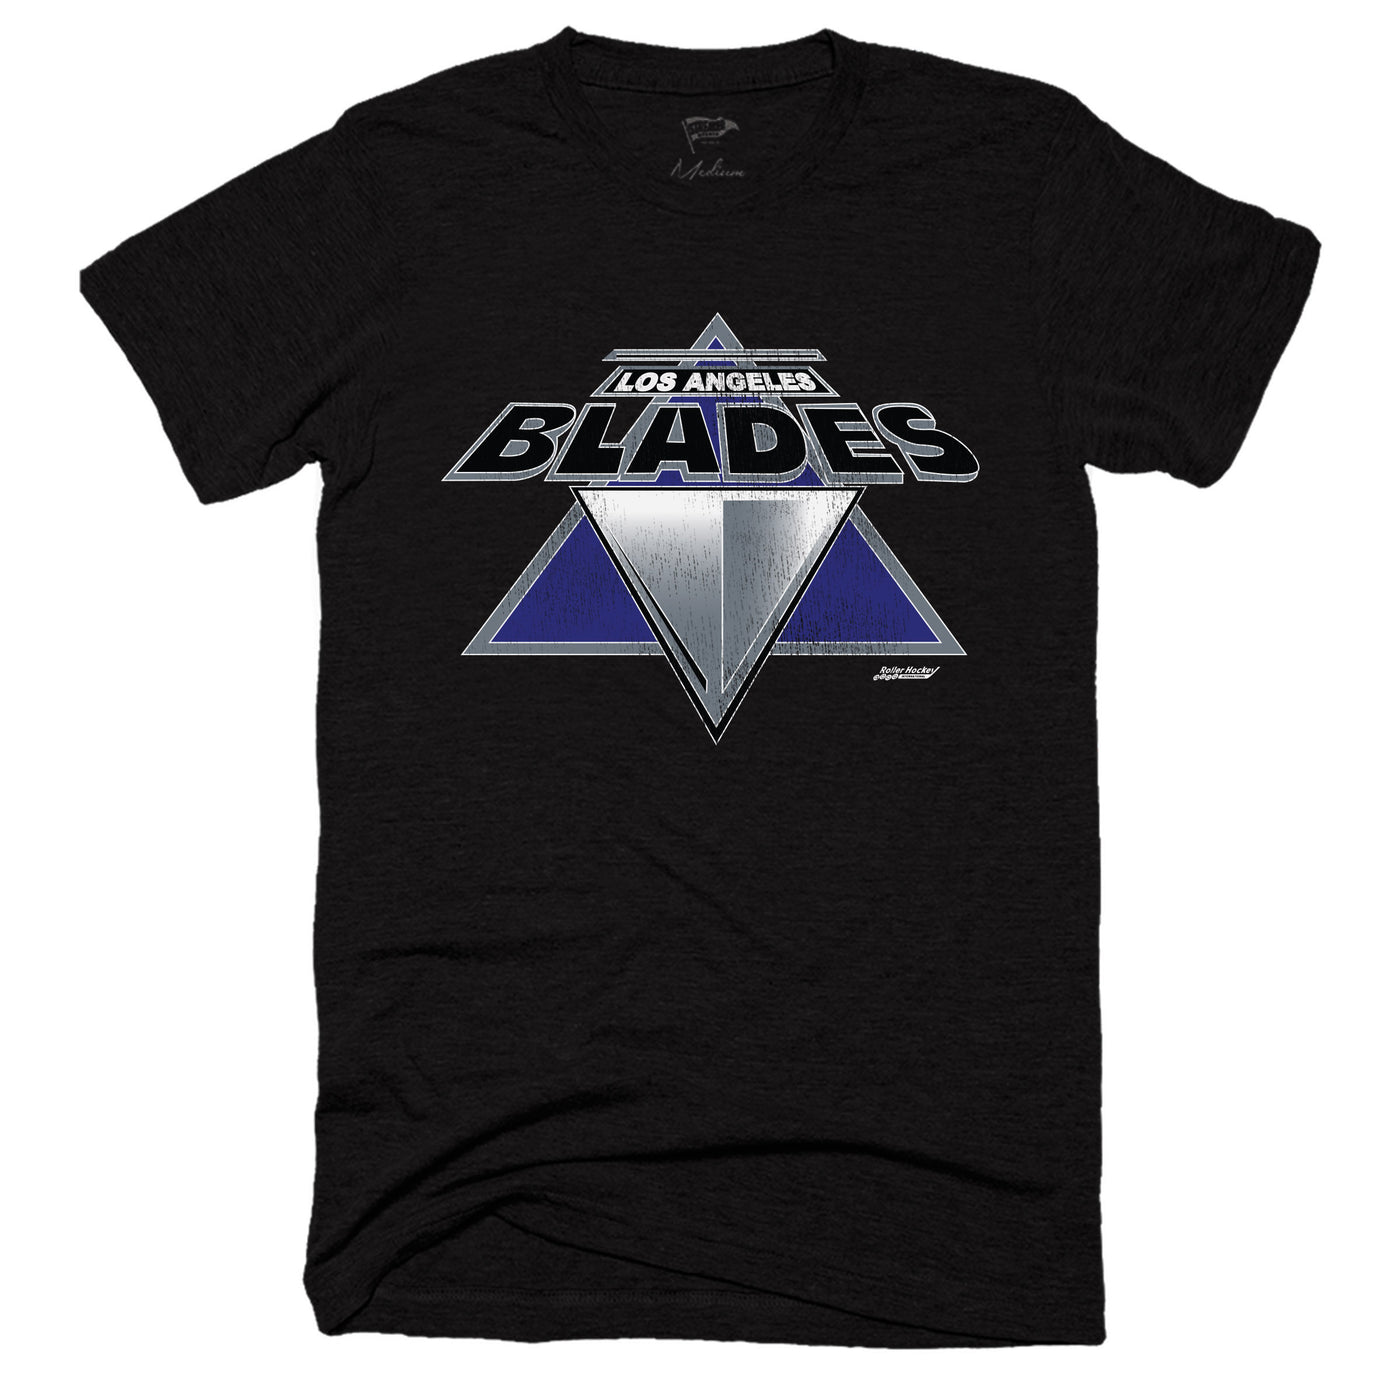 1993 Los Angeles Blades Tee - Streaker Sports